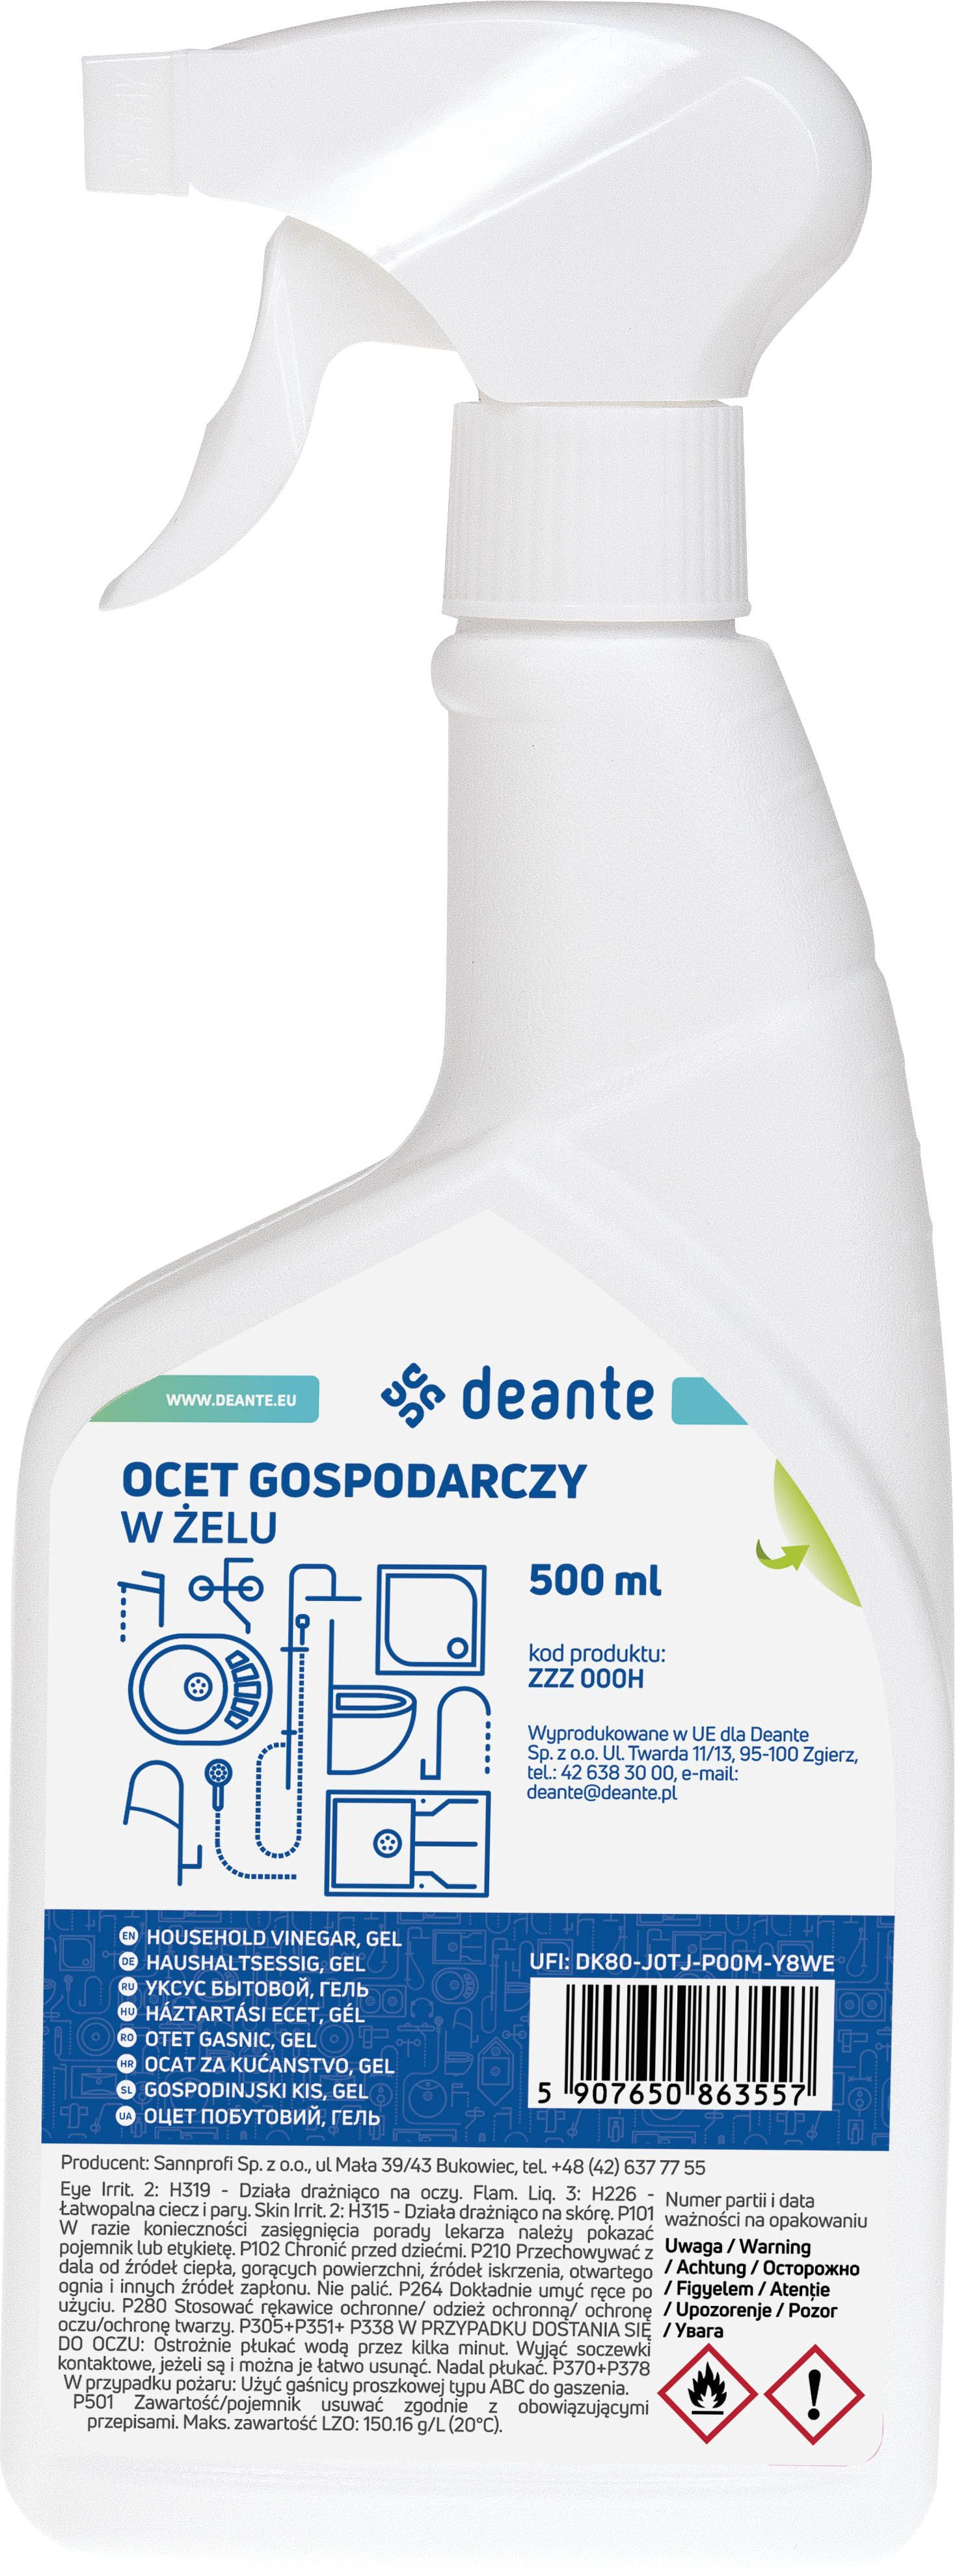 aceto domestico, in gel - ZZZ_000H - Główne zdjęcie produktowe